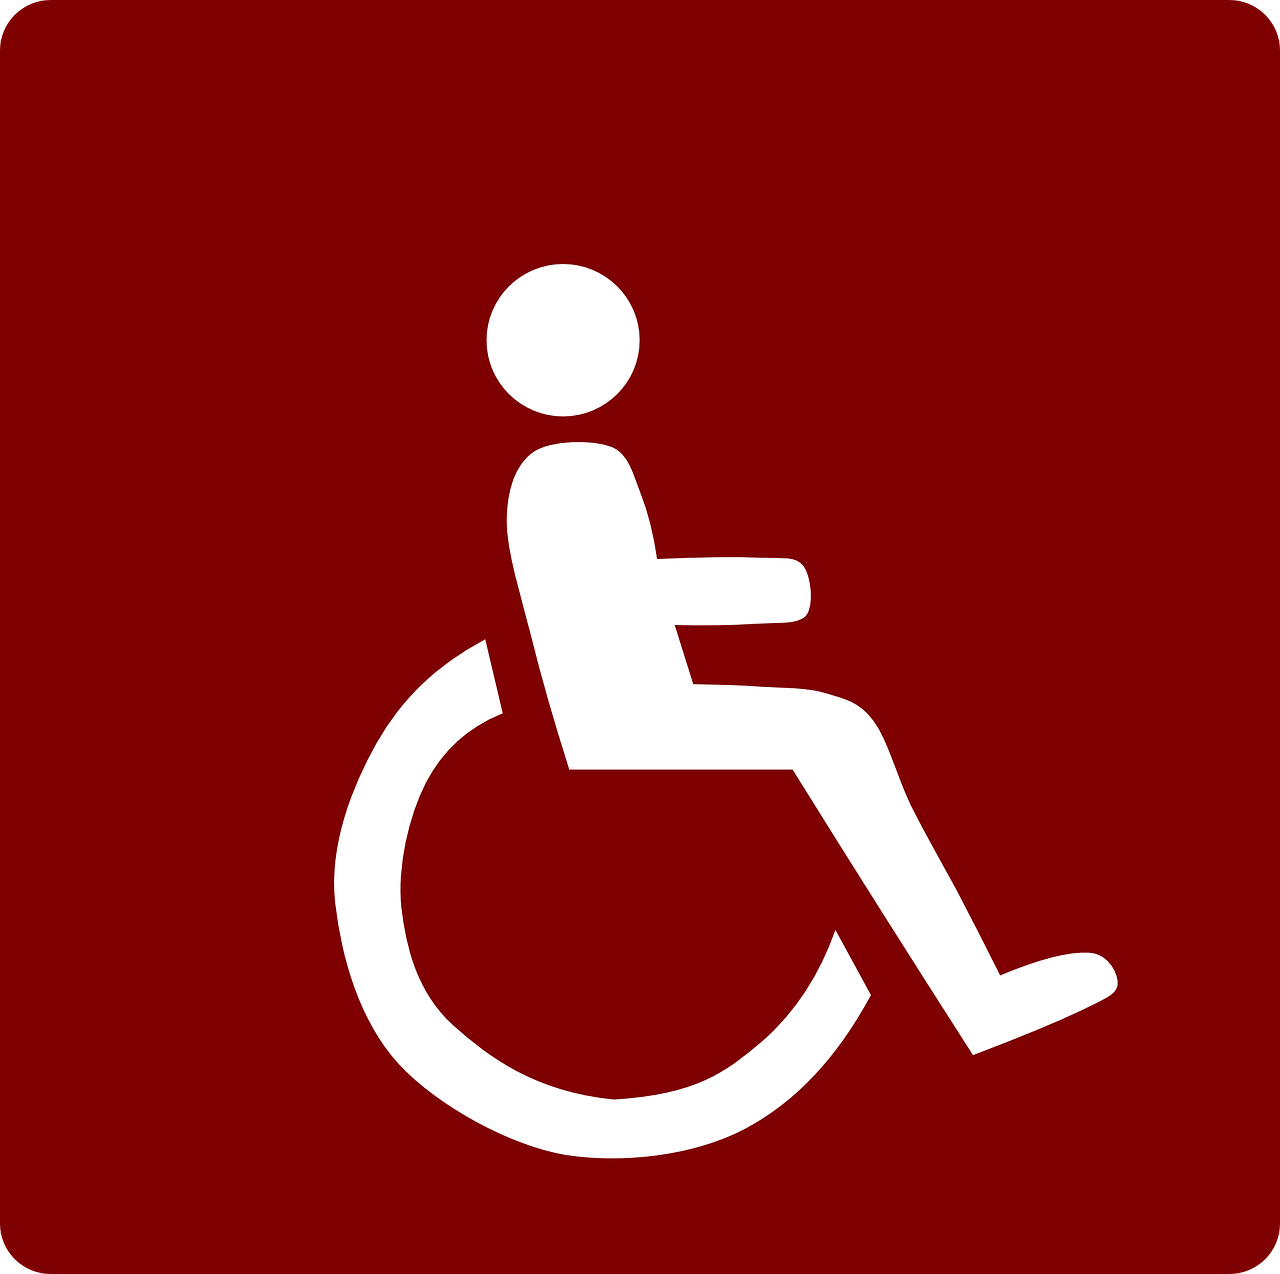 Ervaring De Leer- en Werkomgeving Gemiva - SVG Groep gehandicaptenzorg ervaringen